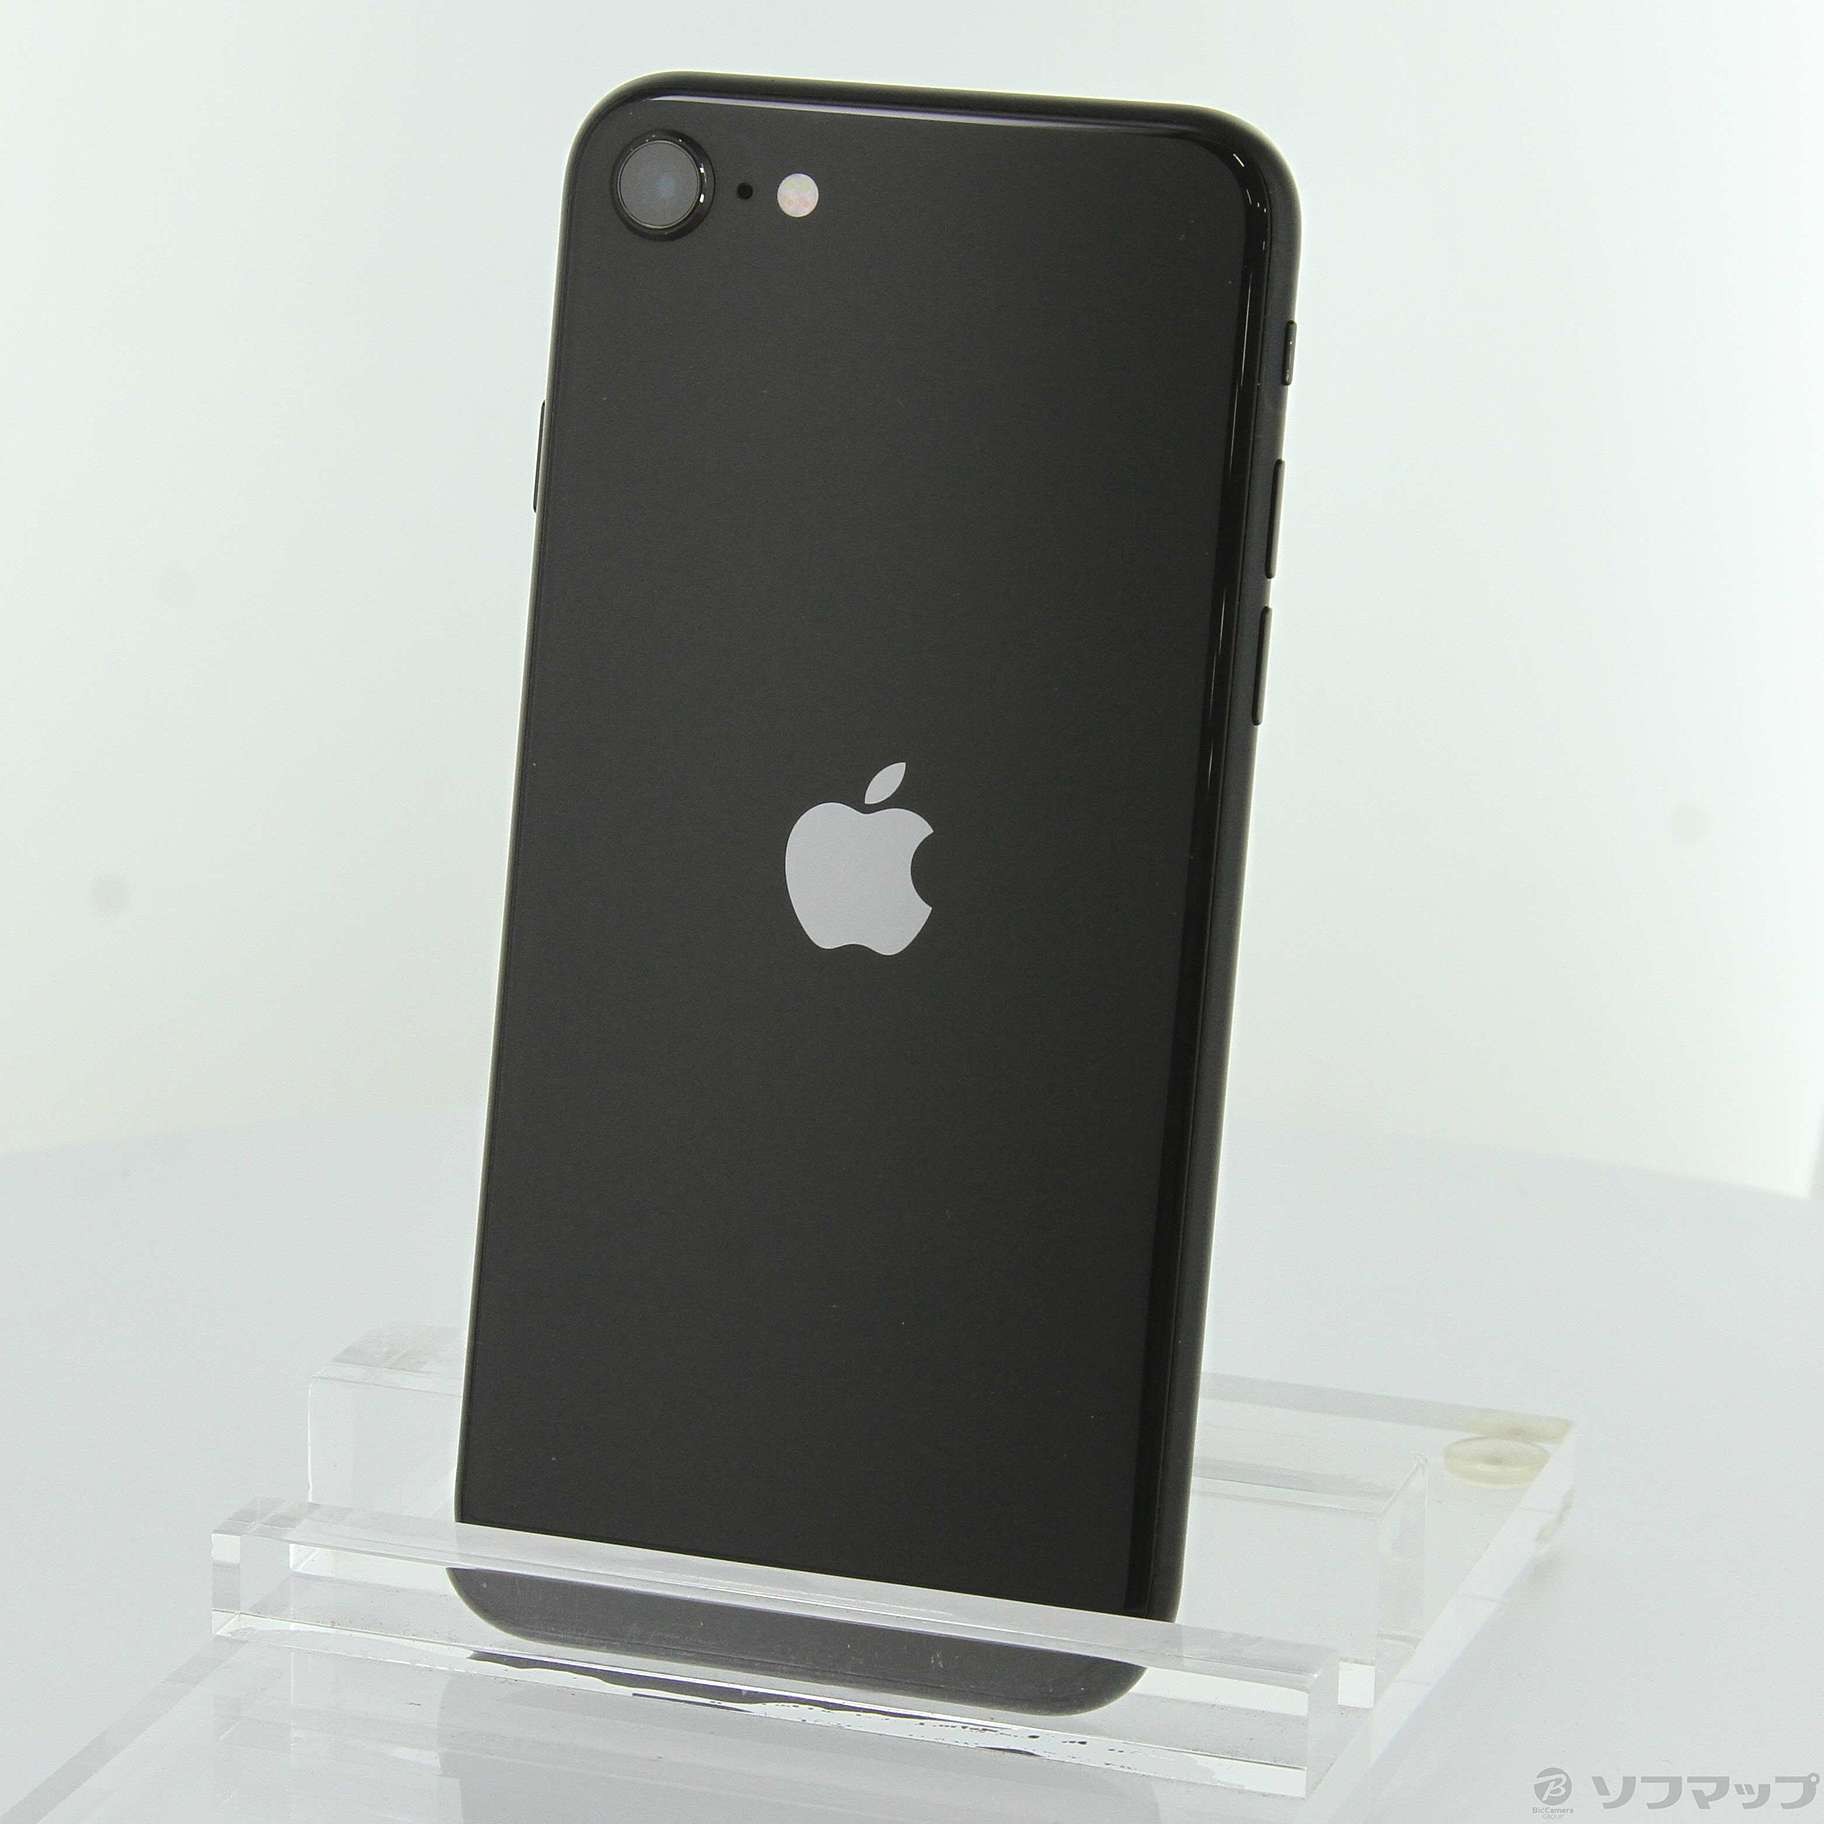 【新品未開封】iPhone SE ブラック 64GB SIMフリー